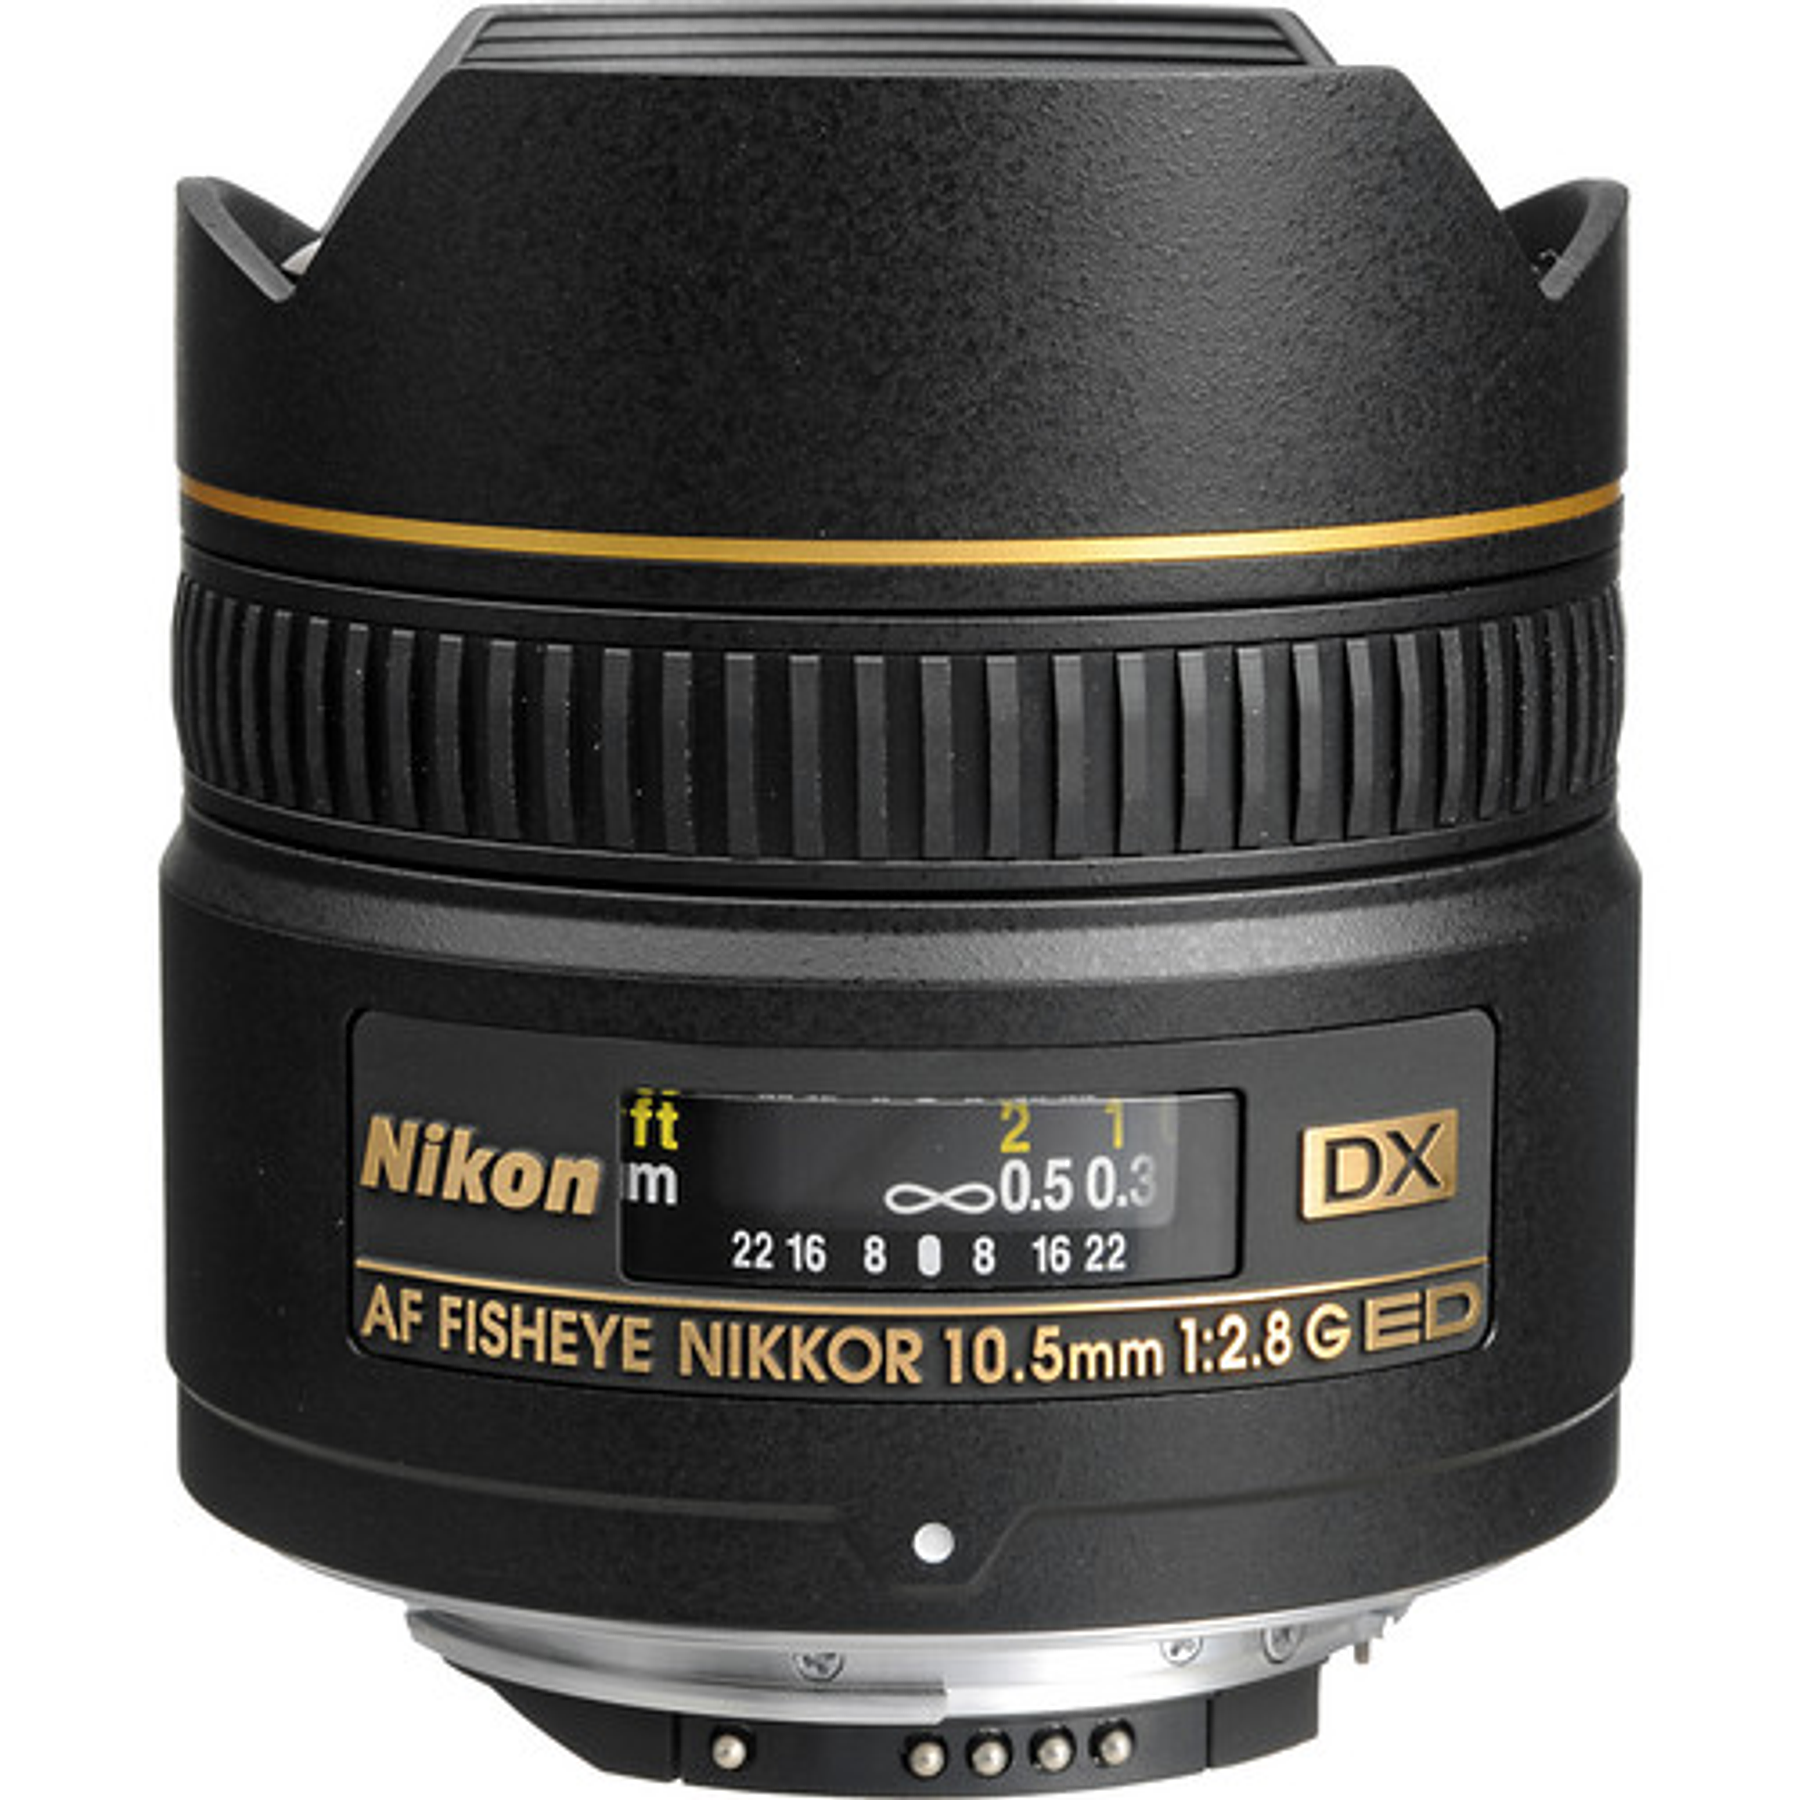 Nikon AF DX Fisheye-Nikkor 10.5mm f 2.8G - レンズ(単焦点)